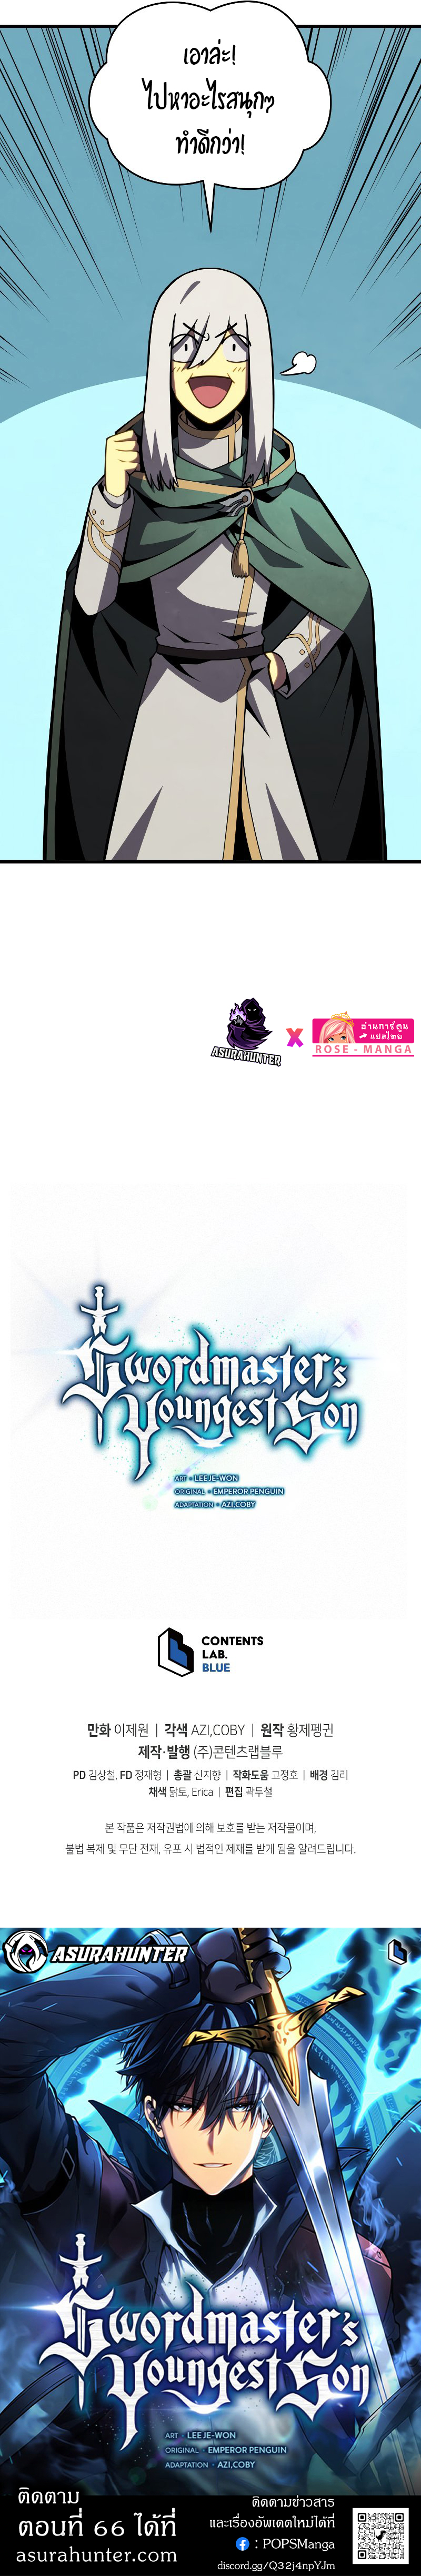 Swordmaster’s Youngest Son 65 10